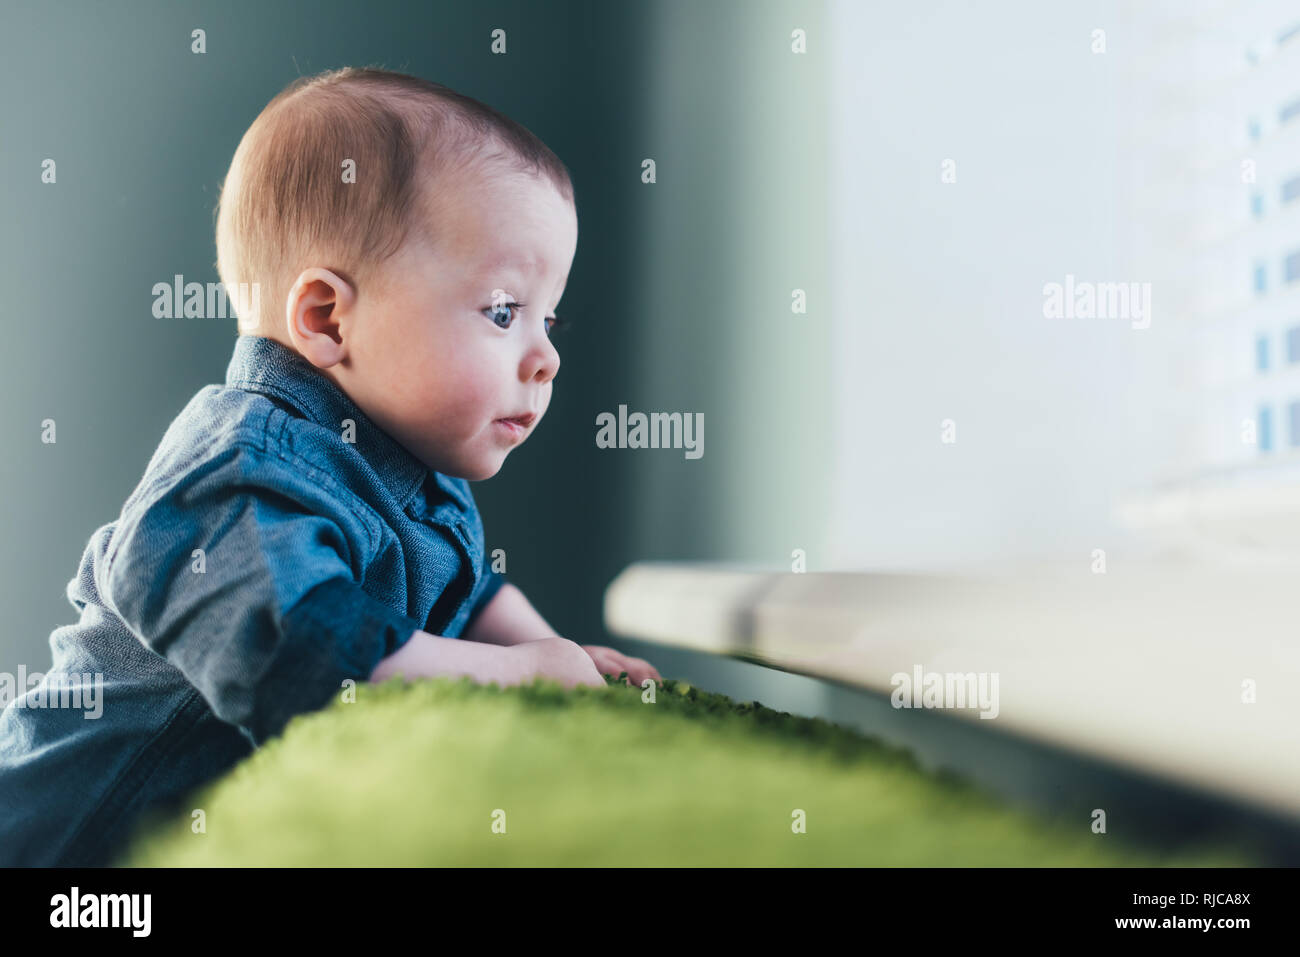 Neugeborenes Baby boy Portrait auf grünen Teppich Nahaufnahme. Mutterschaft und neues Leben Konzept Stockfoto